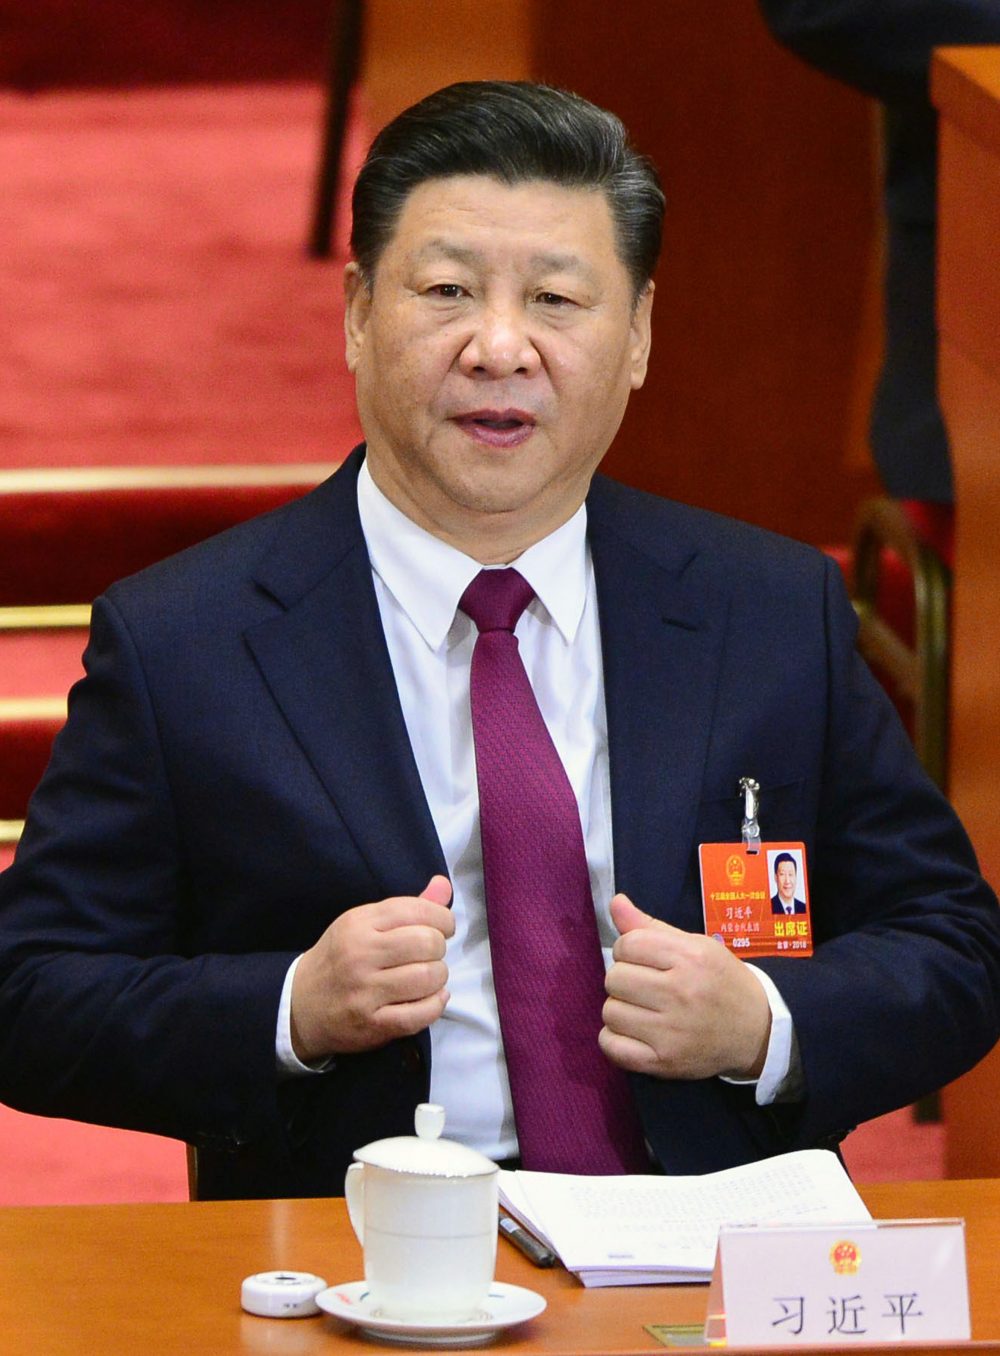 Chinas´ Xi Jinping